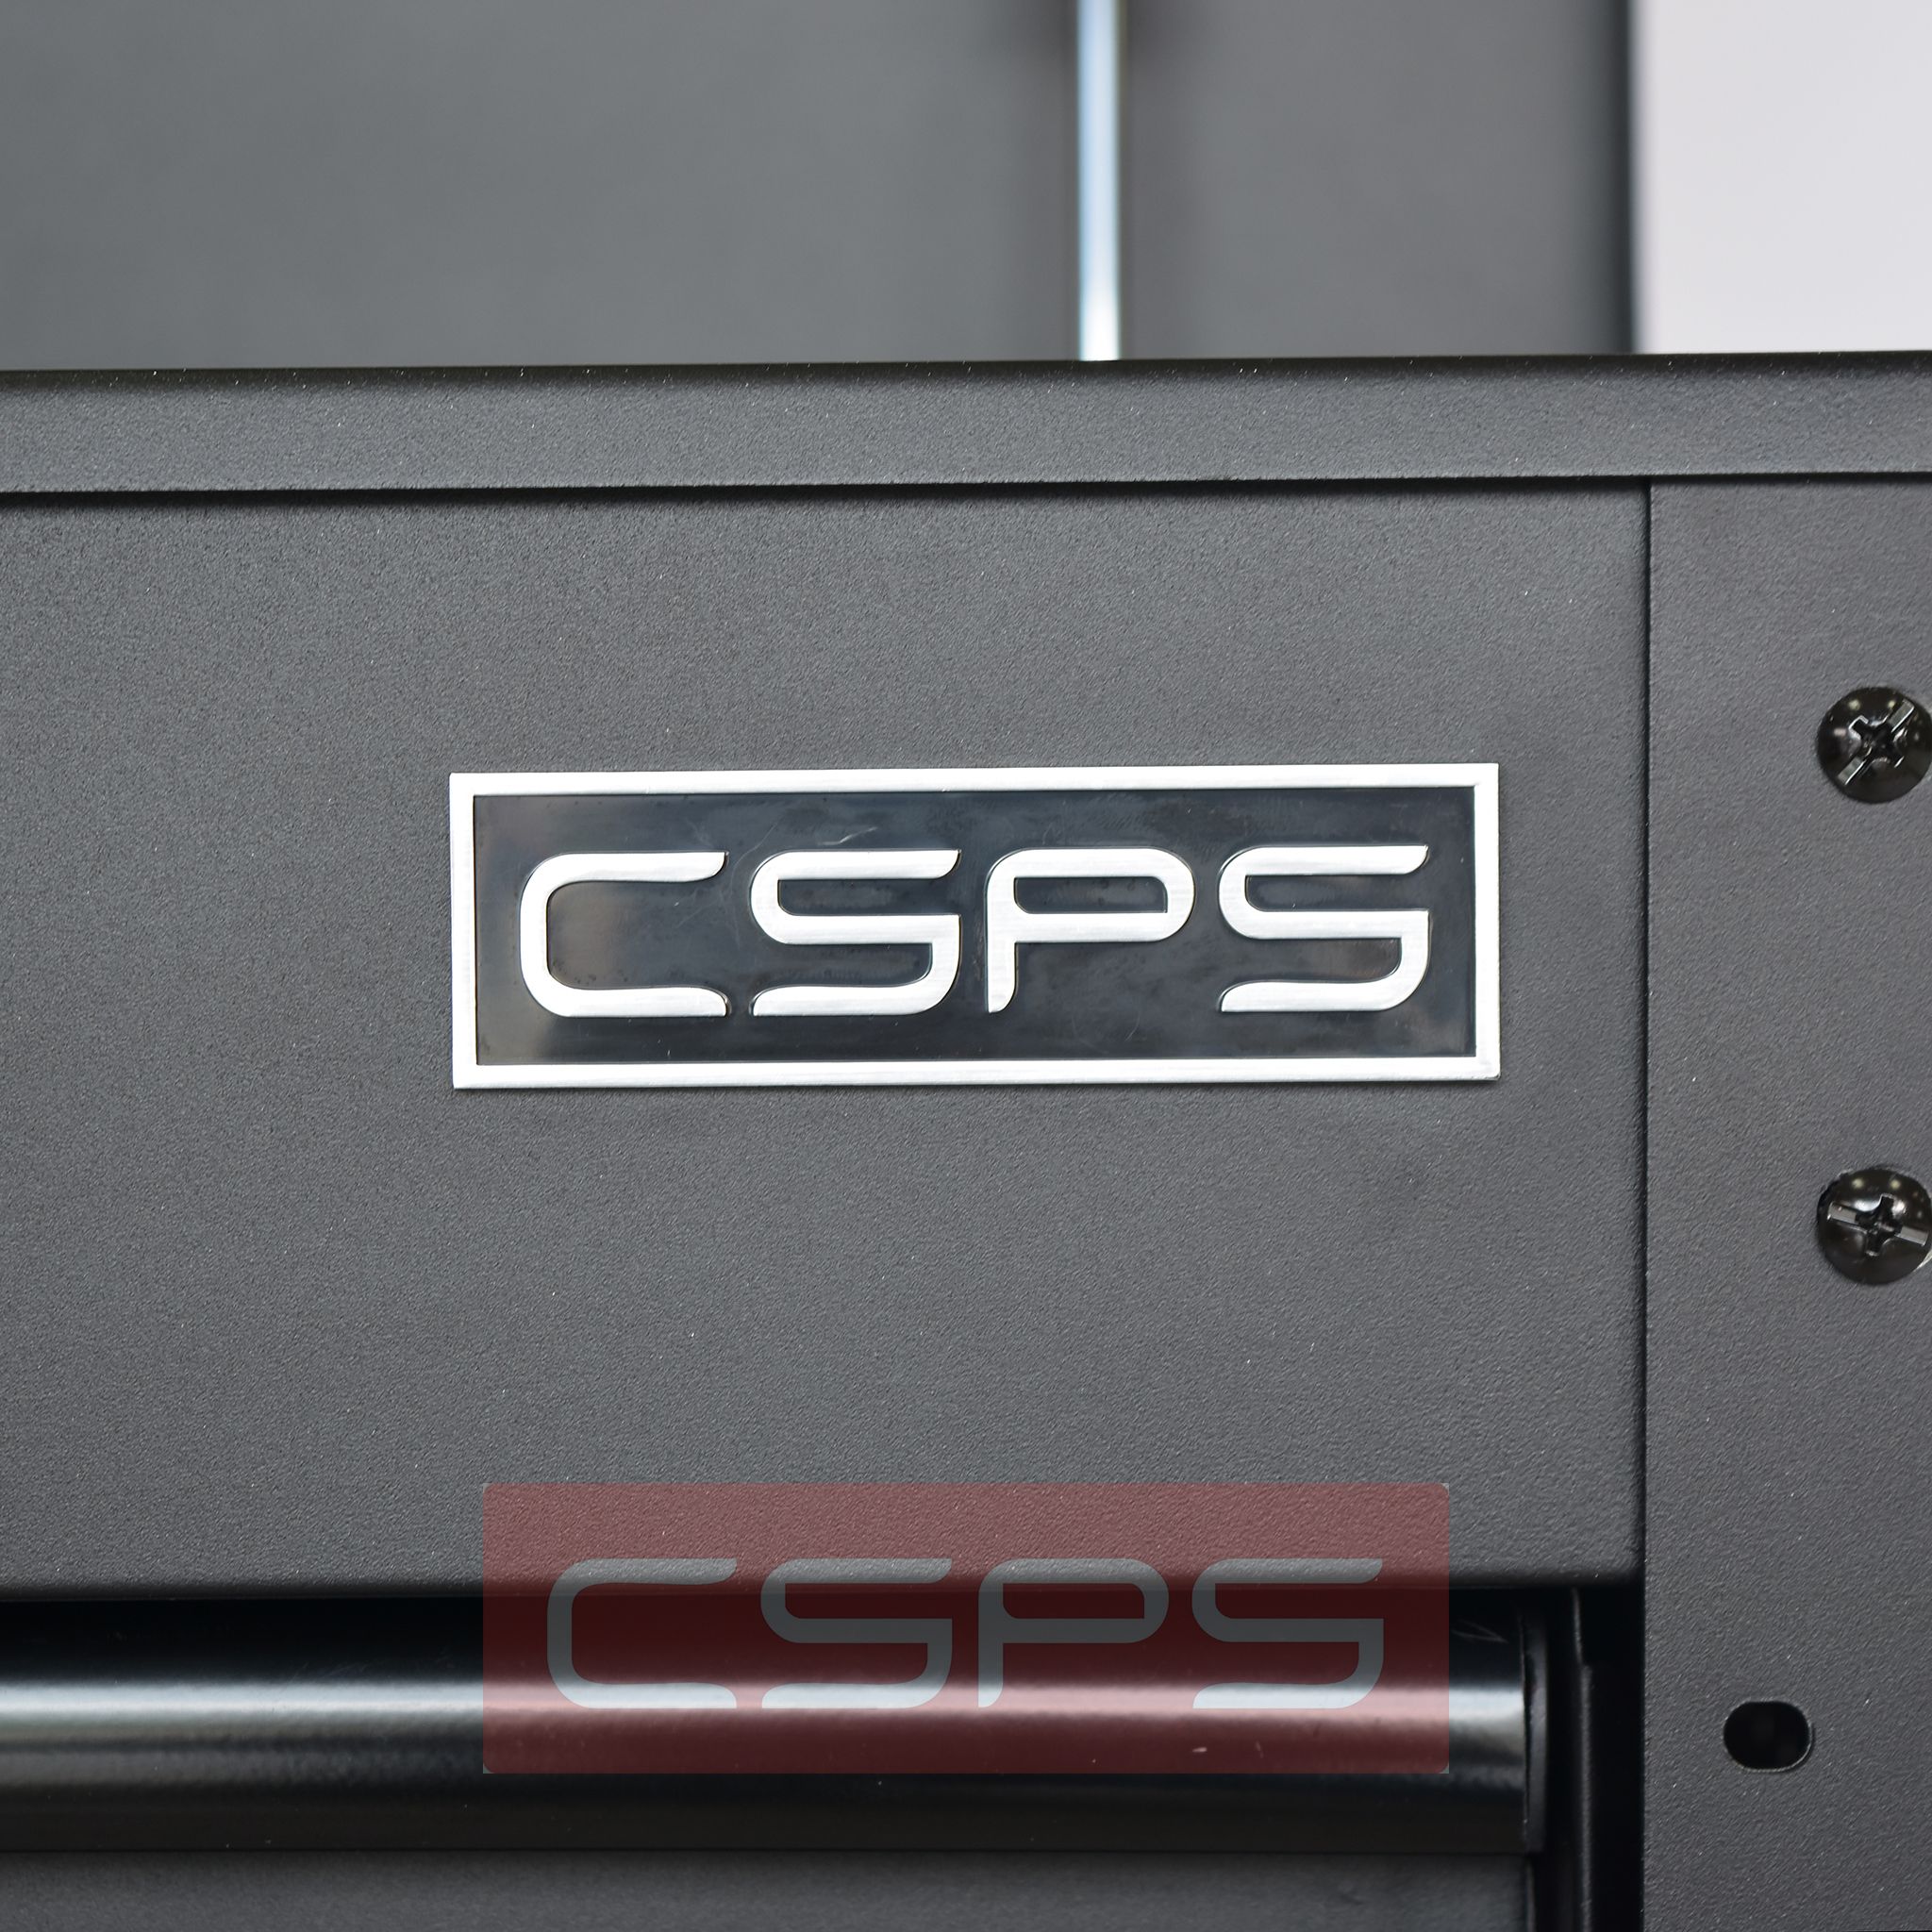  Tủ dụng cụ CSPS 84cm - 04 hộc kéo 